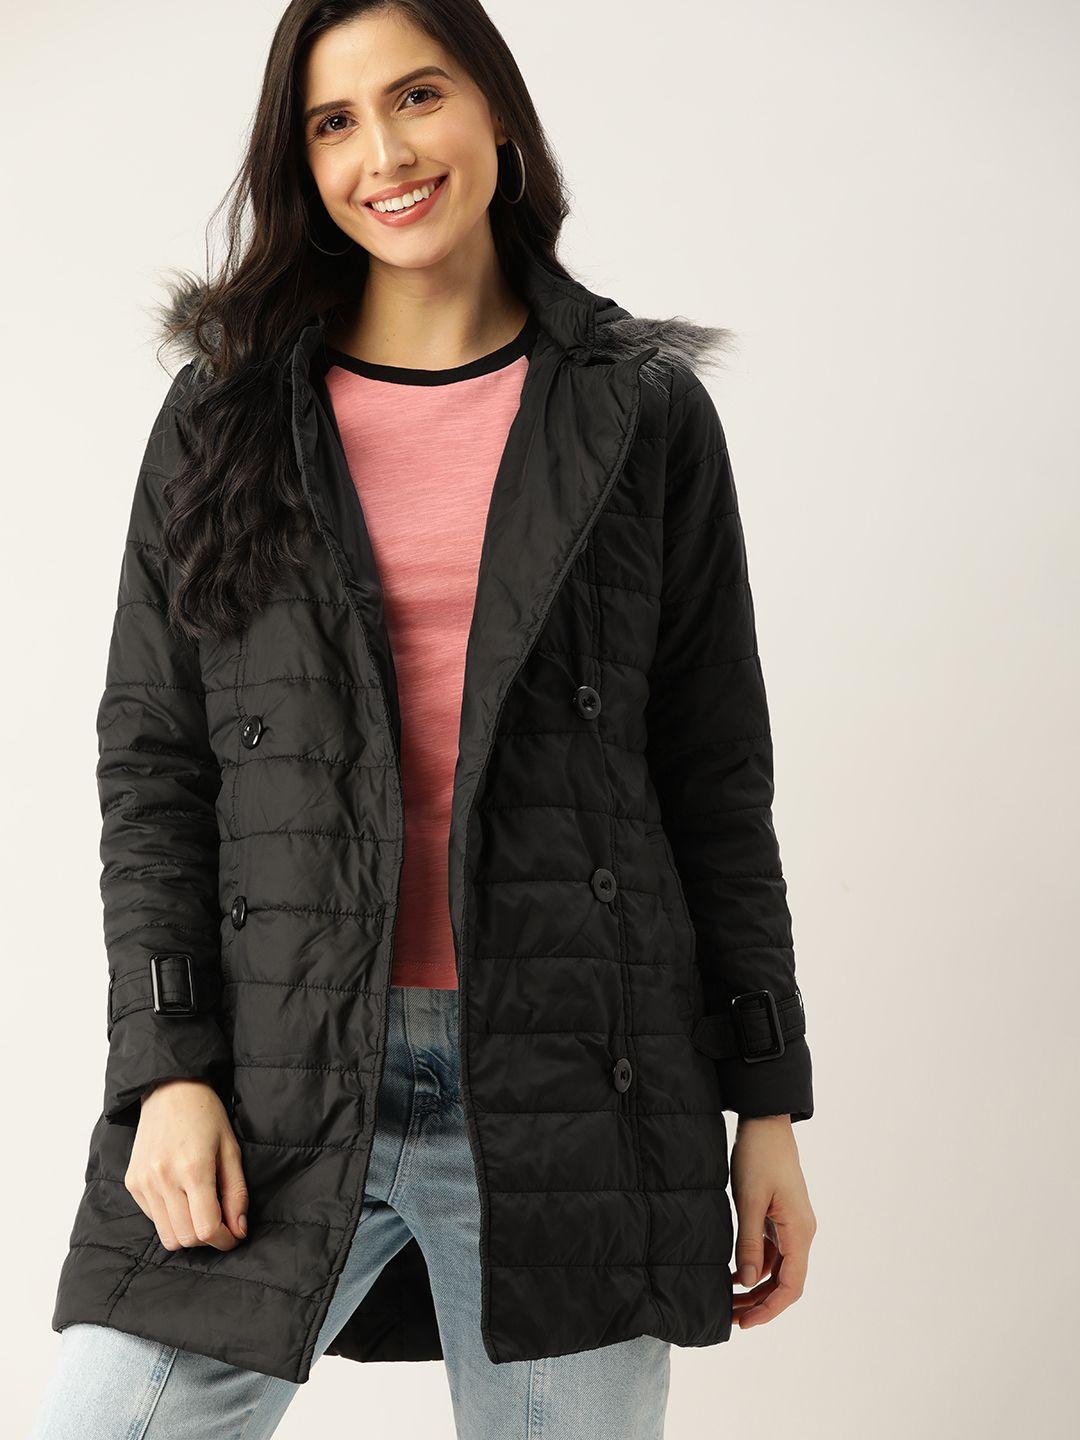 dressberry-women-black-longline-parka-jacket